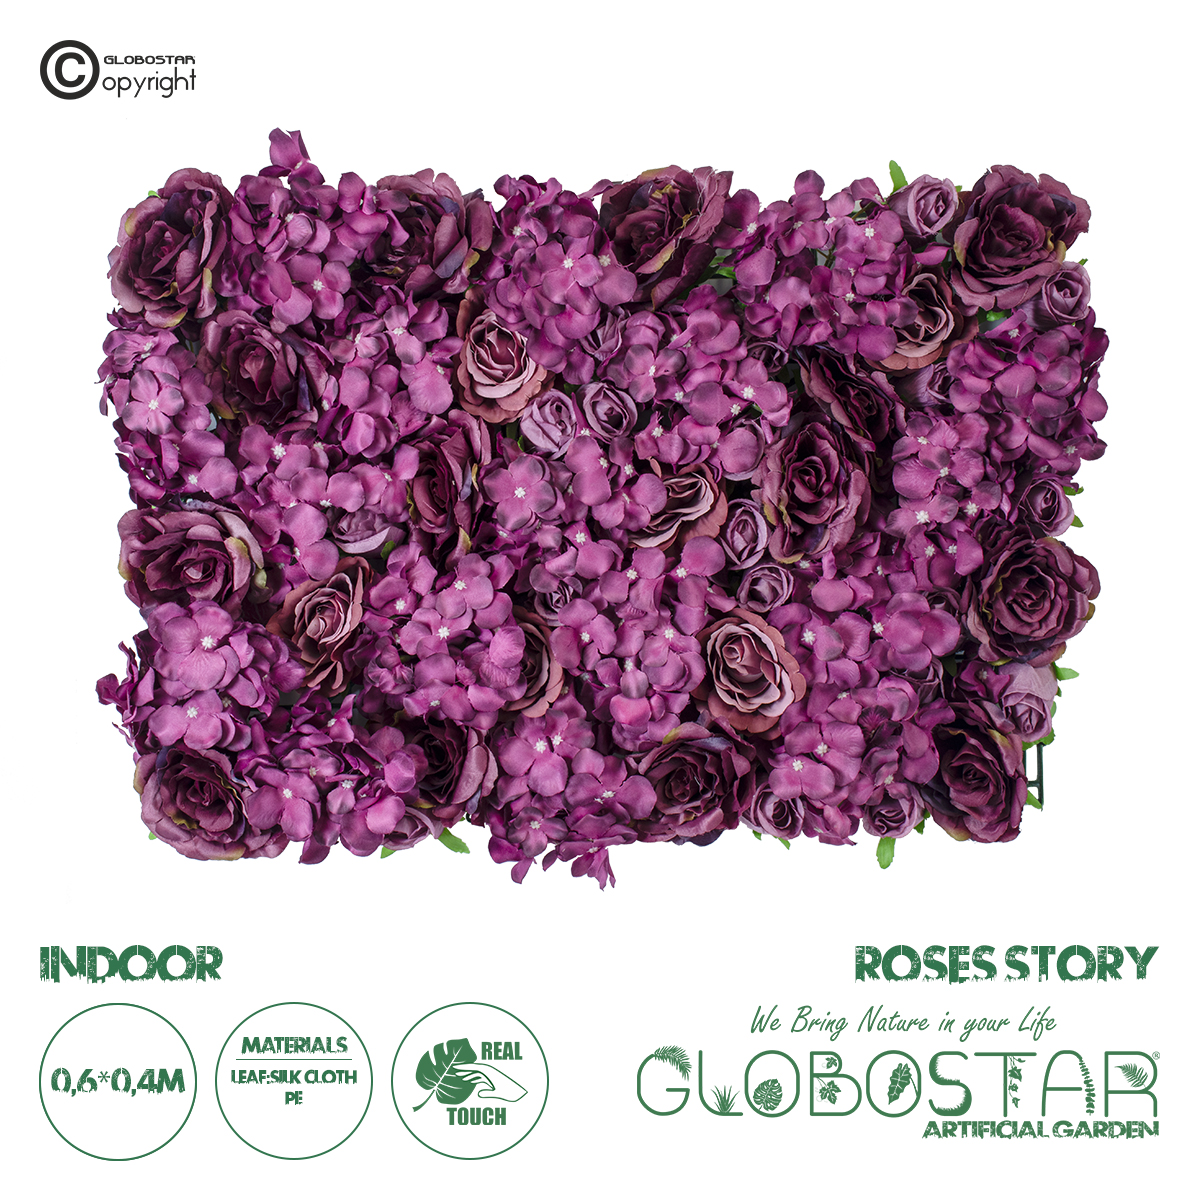 GloboStar® Artificial Garden ROSES STORY 20356 Τεχνητό Διακοσμητικό Πάνελ Λουλουδιών – Κάθετος Κήπος σύνθεση Φουξ & Βυσσινί Τριαντάφυλλα Μ40 x Π60 x Υ10cm